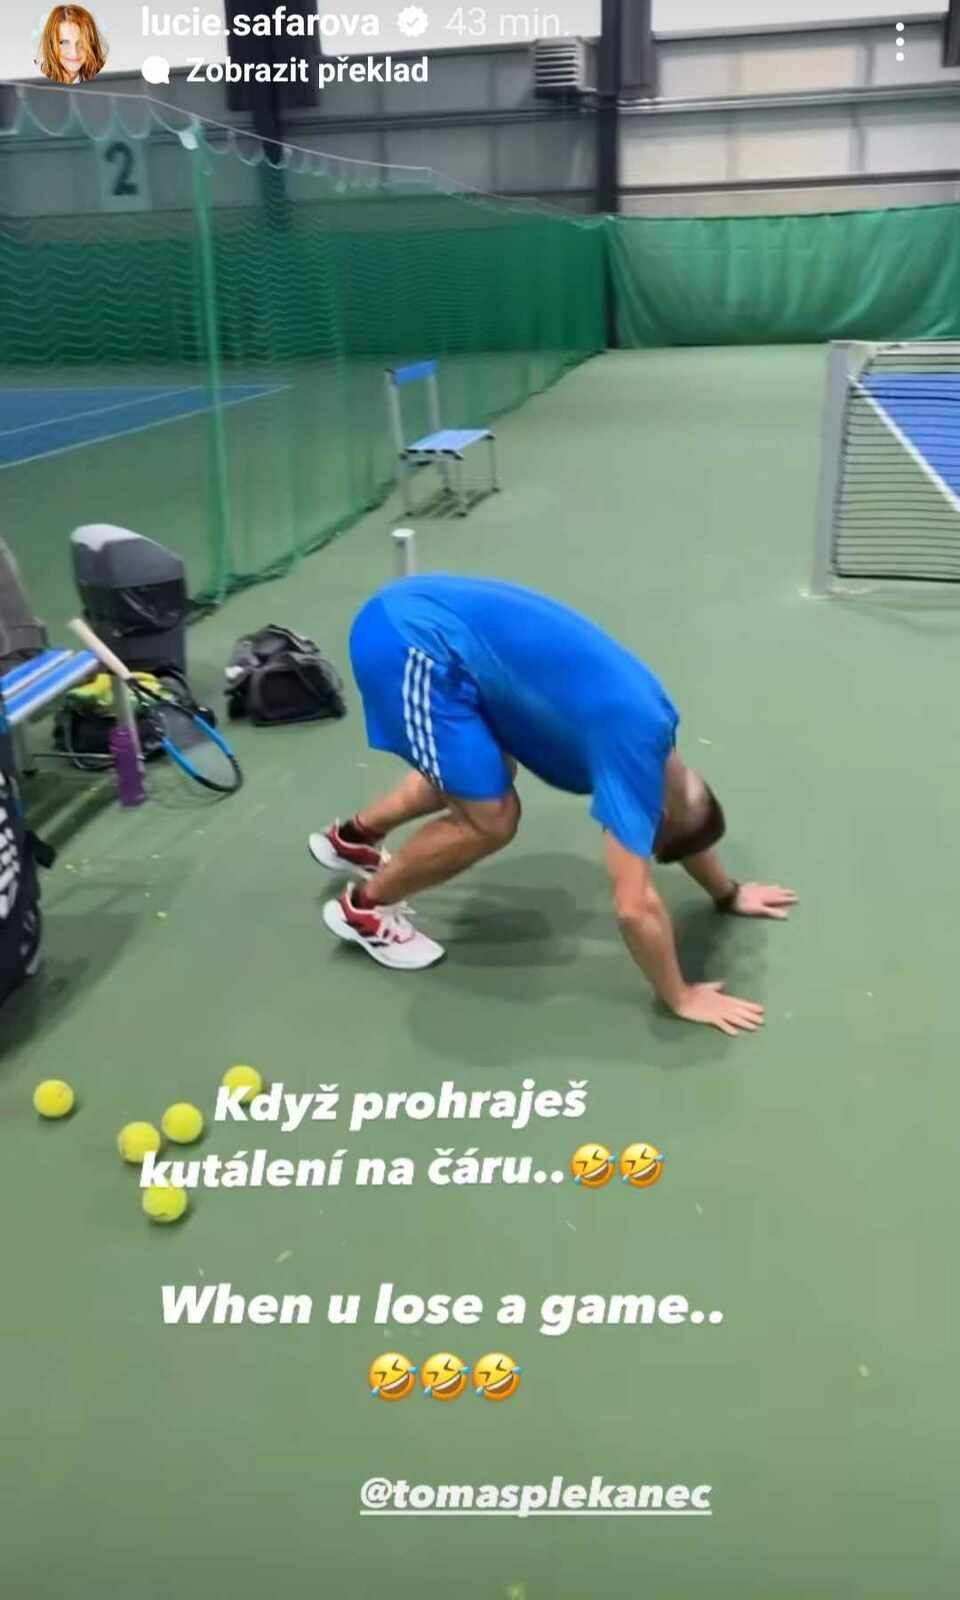 Plekanec prohrál tenisové klání se svou ženou Lucií Šafářovou. Za trest musel dělat kliky